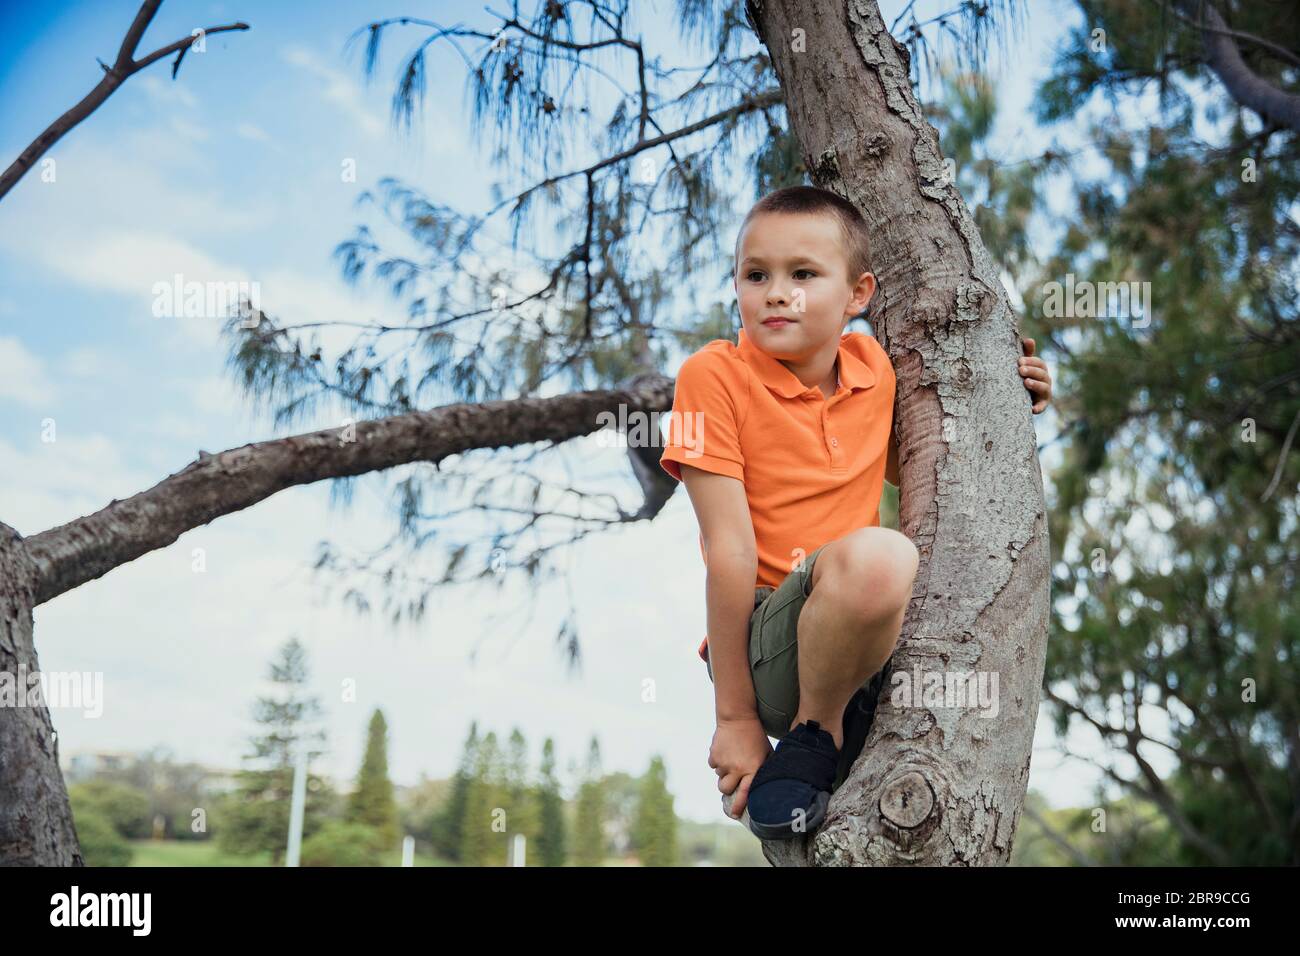 Una baja hacia abajo la foto de un joven muchacho caucásico escalando alto en un árbol, él está vistiendo ropa informal. Foto de stock